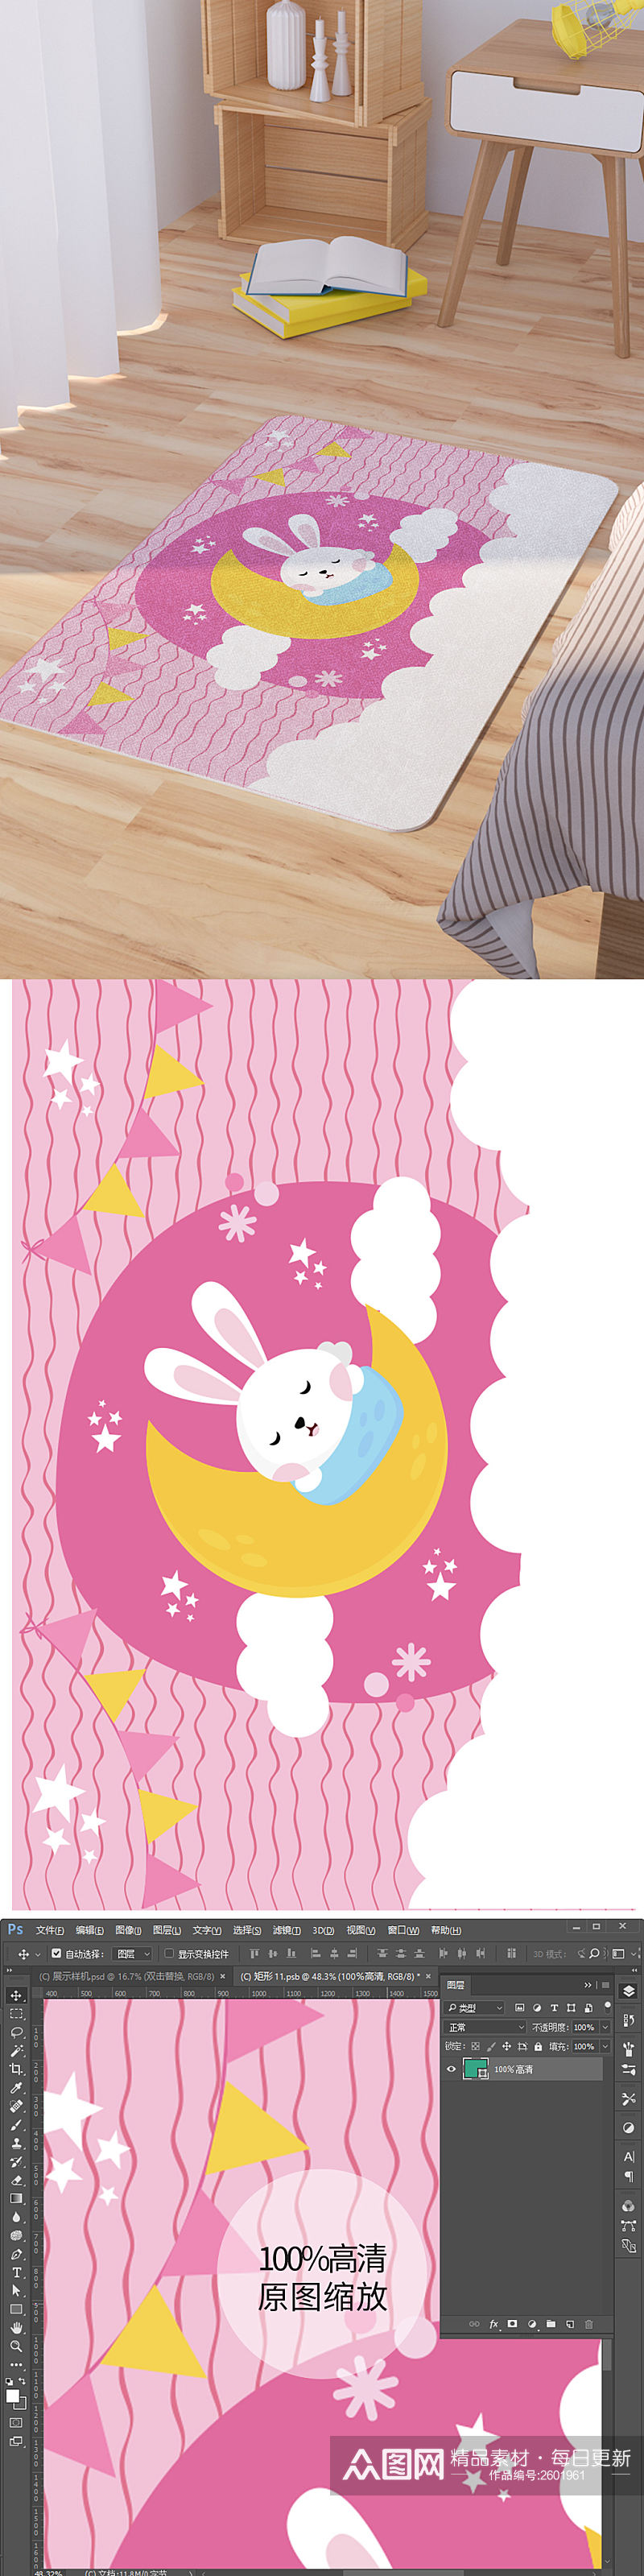 矢量手绘卡通可爱小兔晚安脚垫地毯图案素材